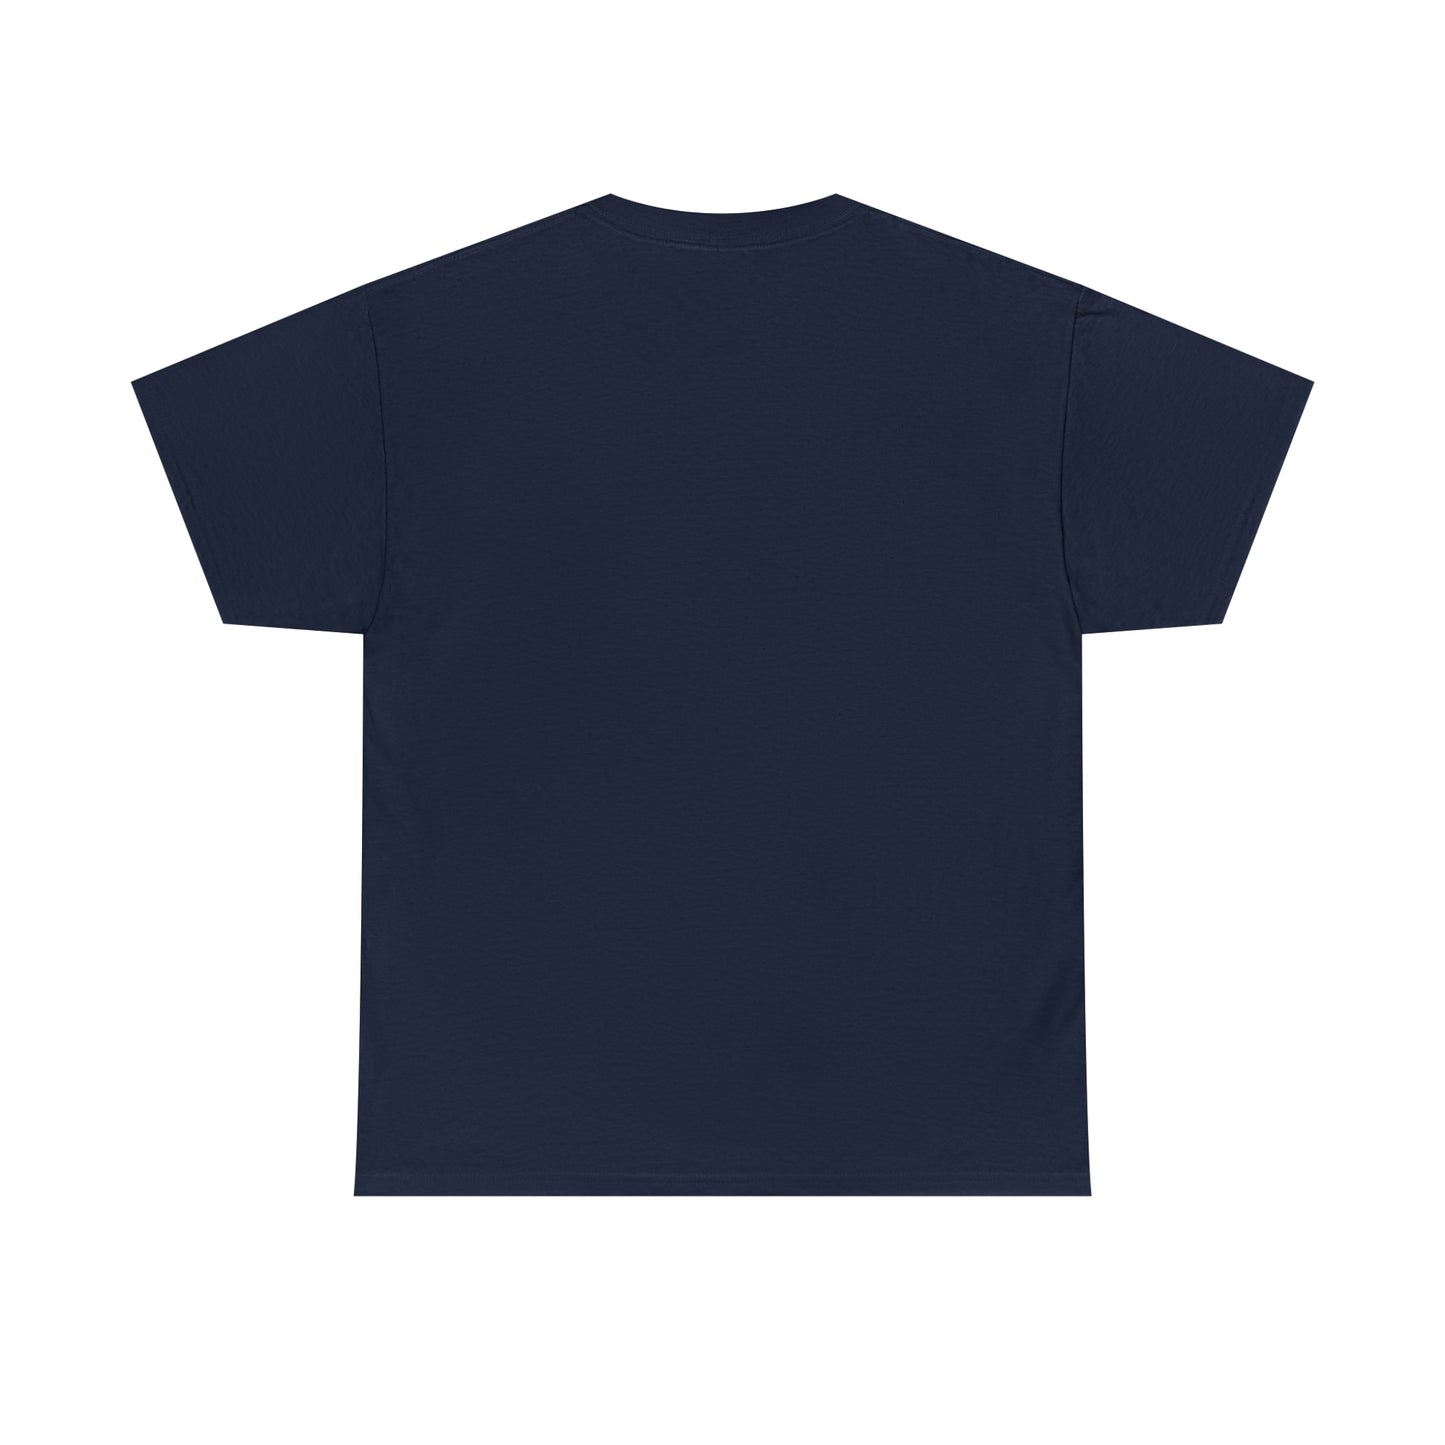 Centennial - Men's Heavy Cotton T-Shirt - Class Of 2021